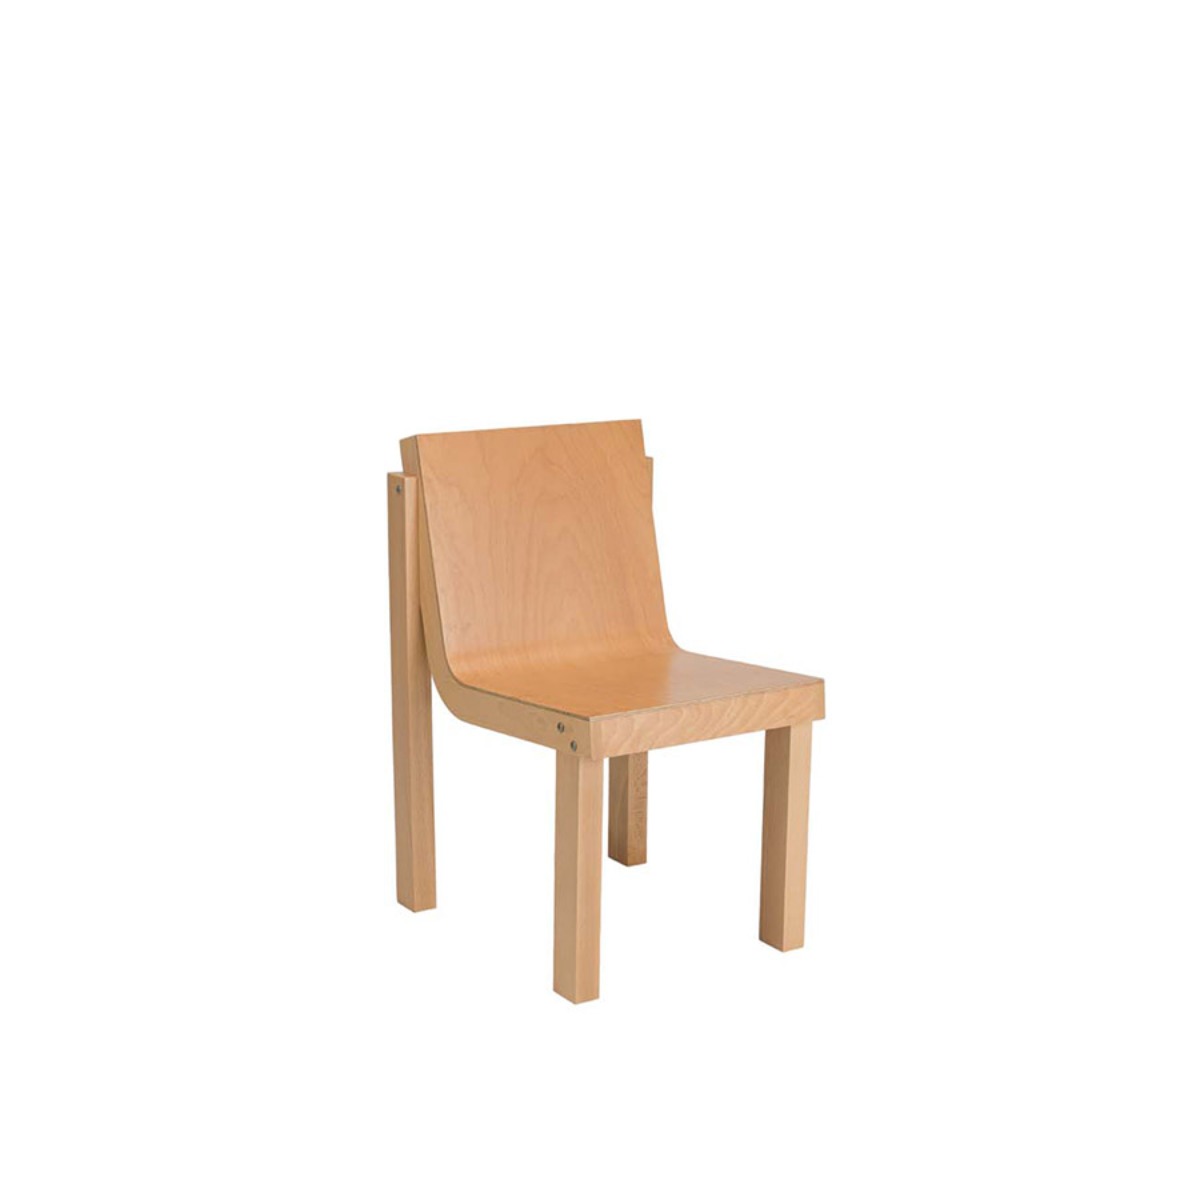 leesanghoon furniture Chair 03 Black